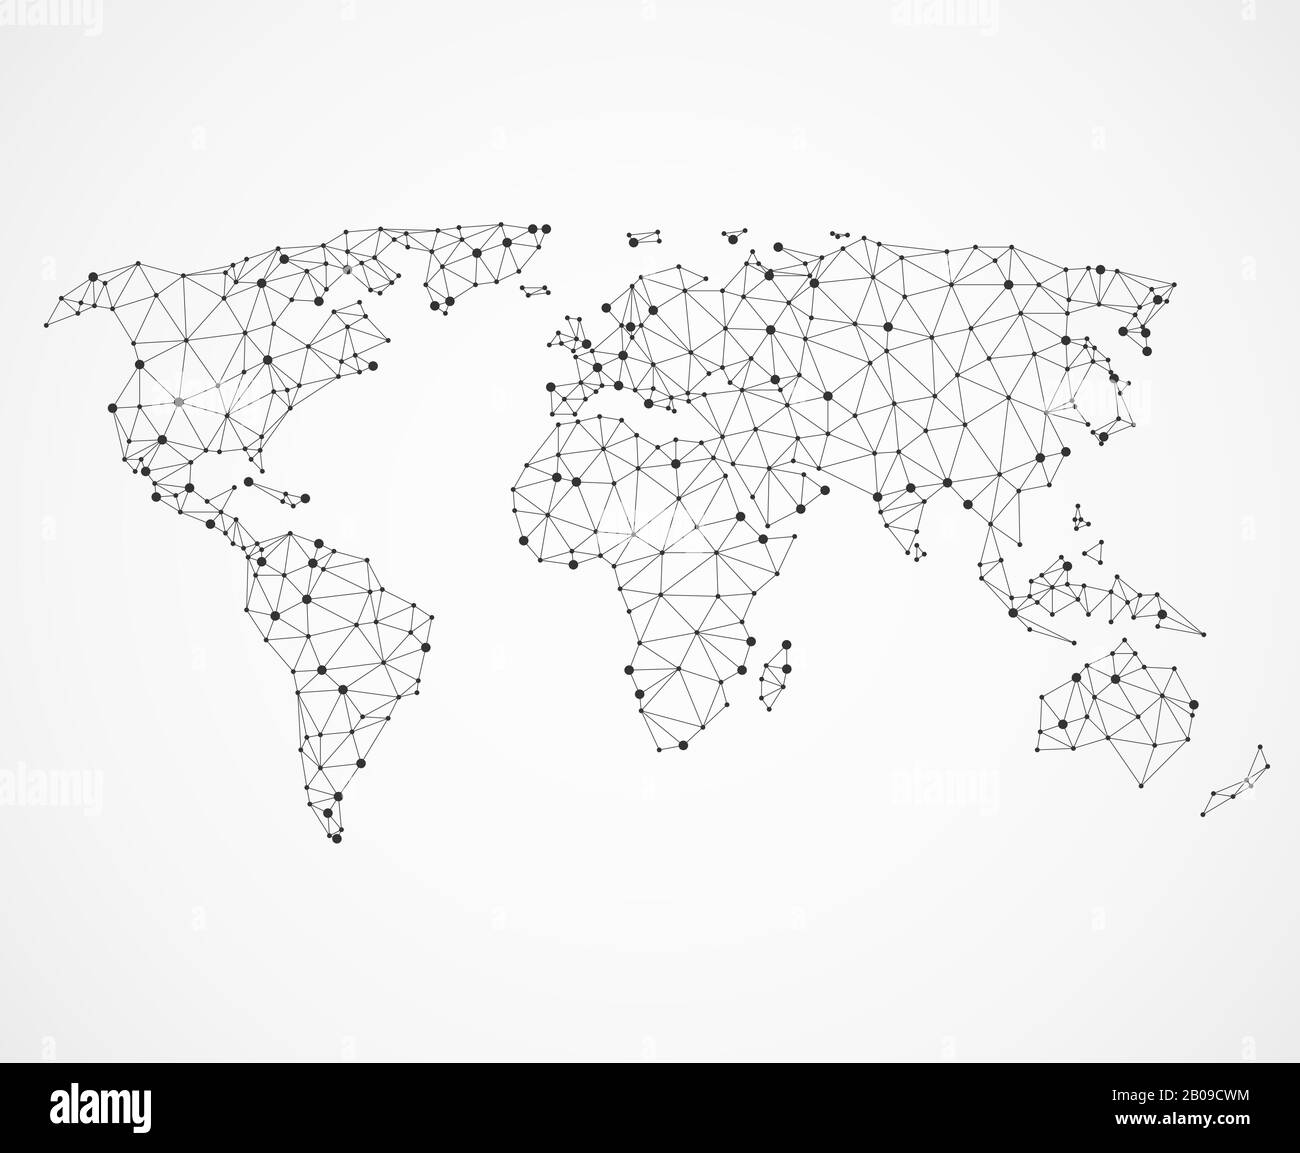 Texture de la carte du monde de mise en réseau, carte de terre poly basse. Concept de communication globale Vector. Carte d'illustration du réseau numérique mondial Illustration de Vecteur